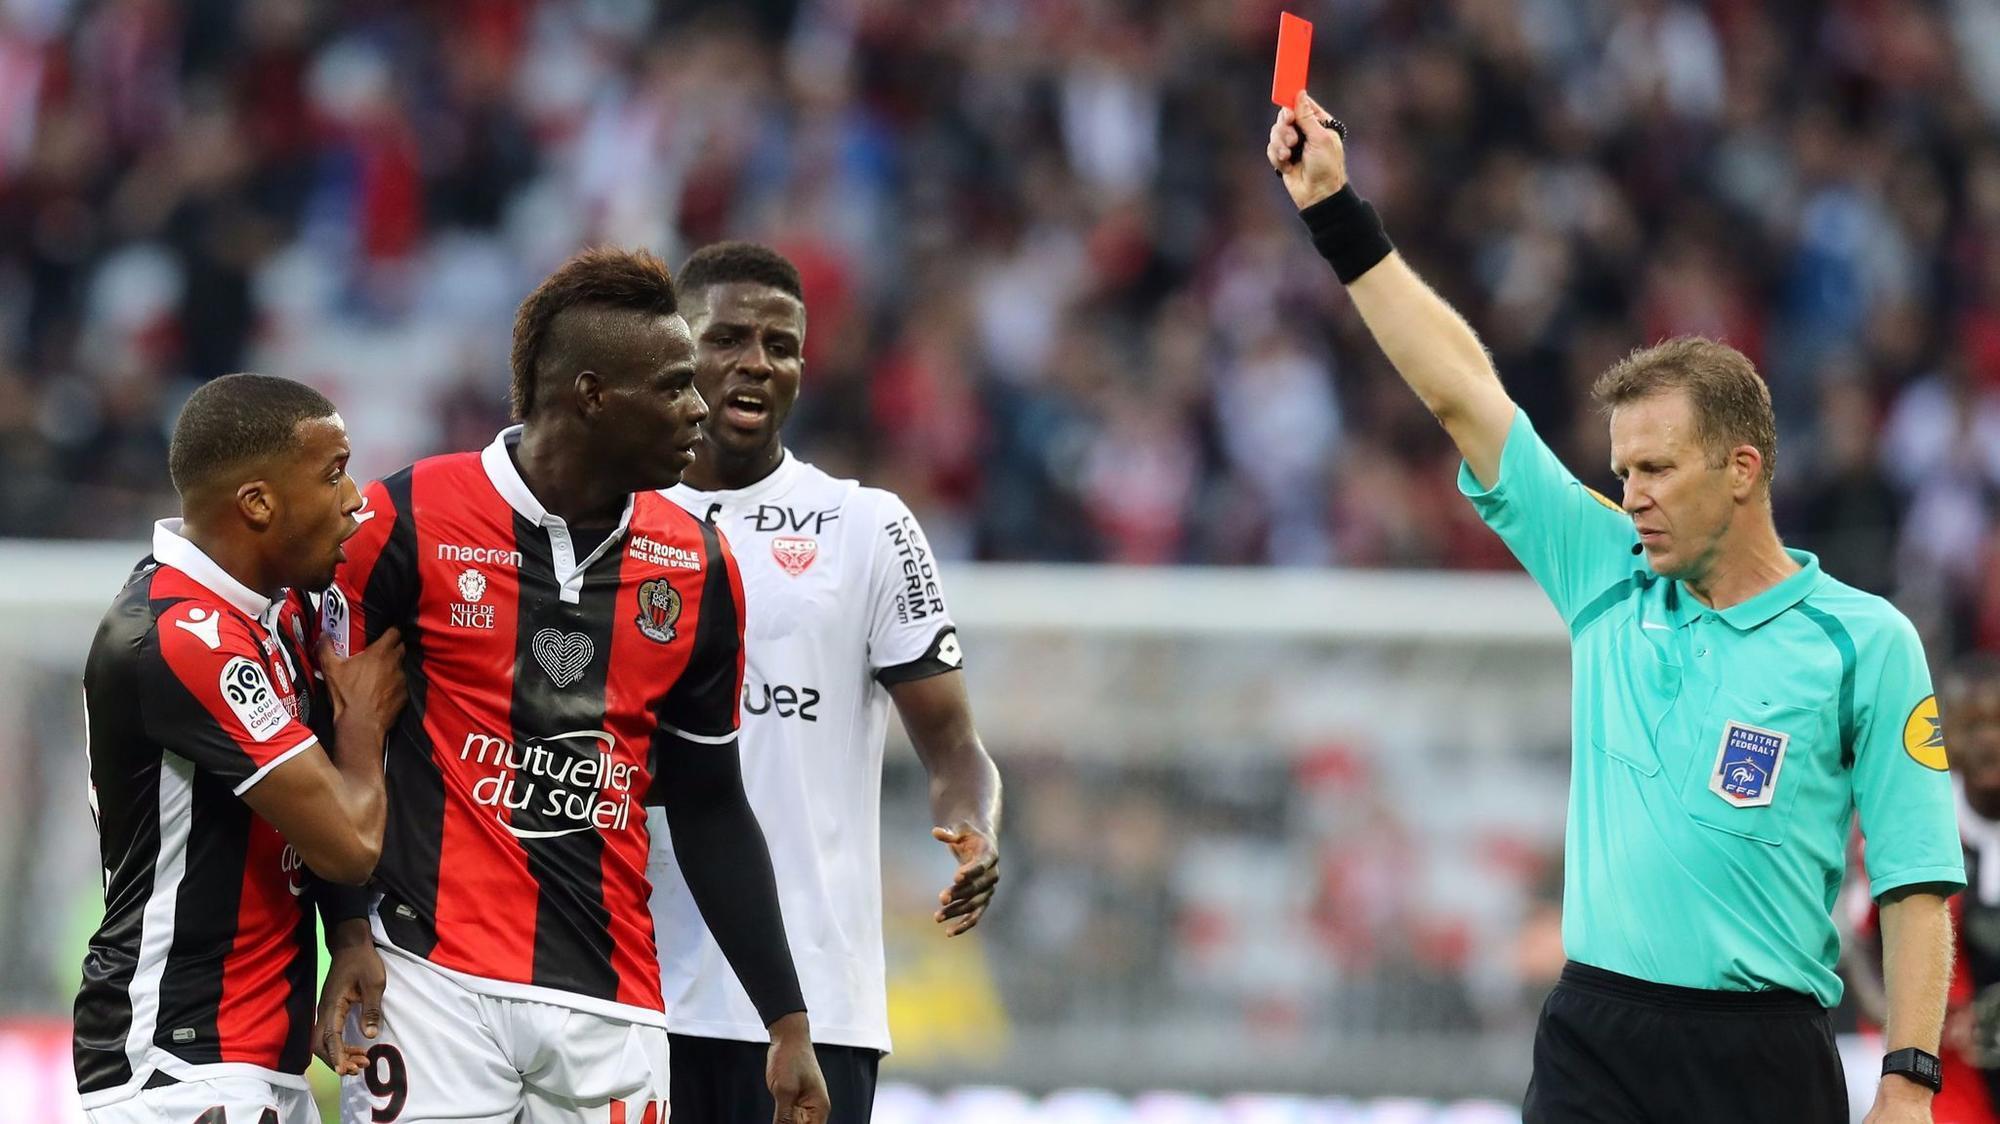 KHÓ TIN: Nổ súng giúp đội nhà thắng trận nhưng Balotelli lại bị trọng tài đuổi oan ở Ligue 1